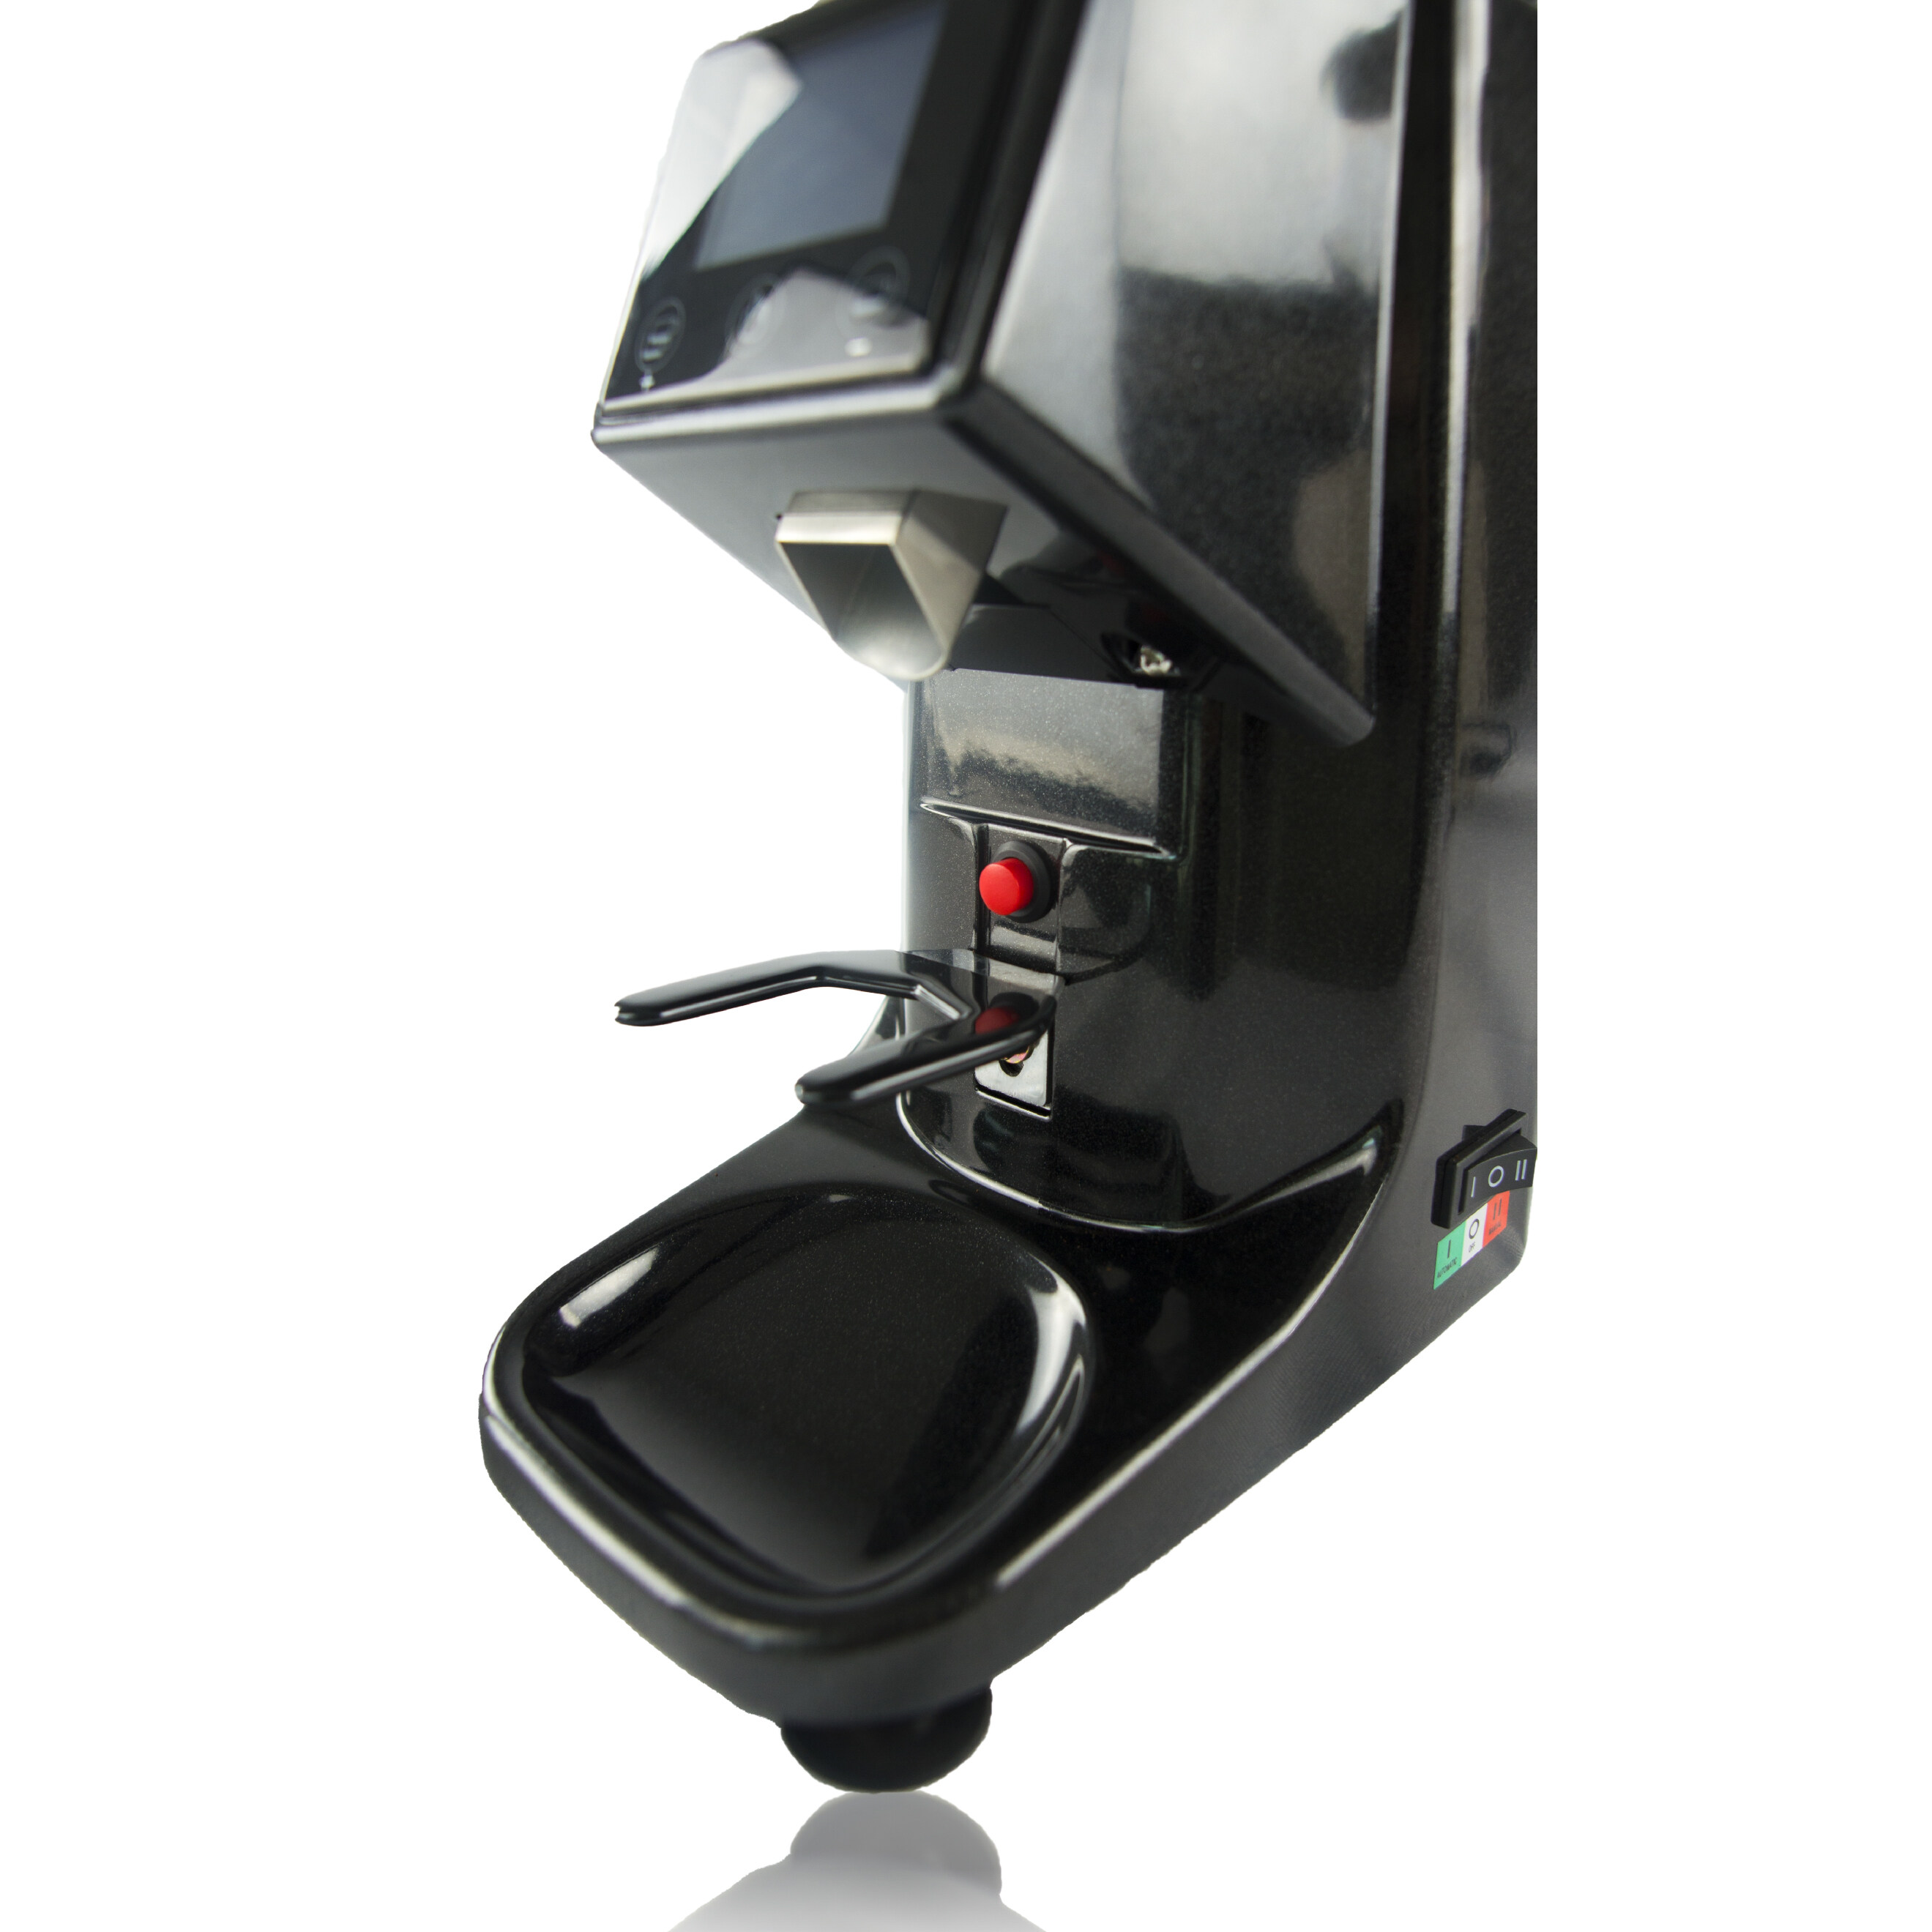 Duchess CG9500 - Coffee Grinder เครื่องบดเมล็ดกาแฟ มี 2สี ให้เลือก (สีดำ/สีขาว) (รับประกันเครื่อง 1 ปี)